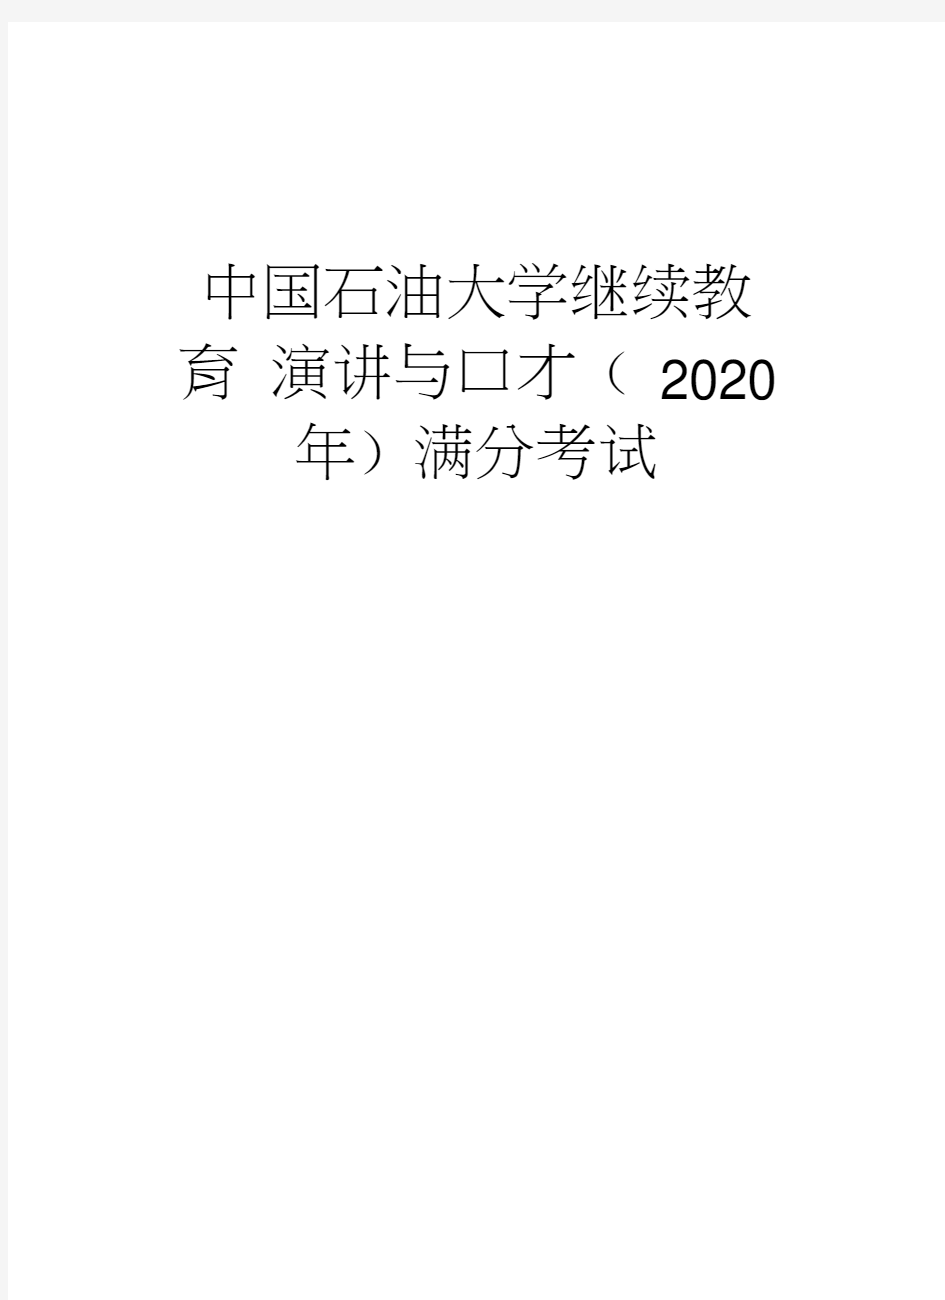 中国石油大学继续教育演讲与口才(2020年)满分考试学习资料